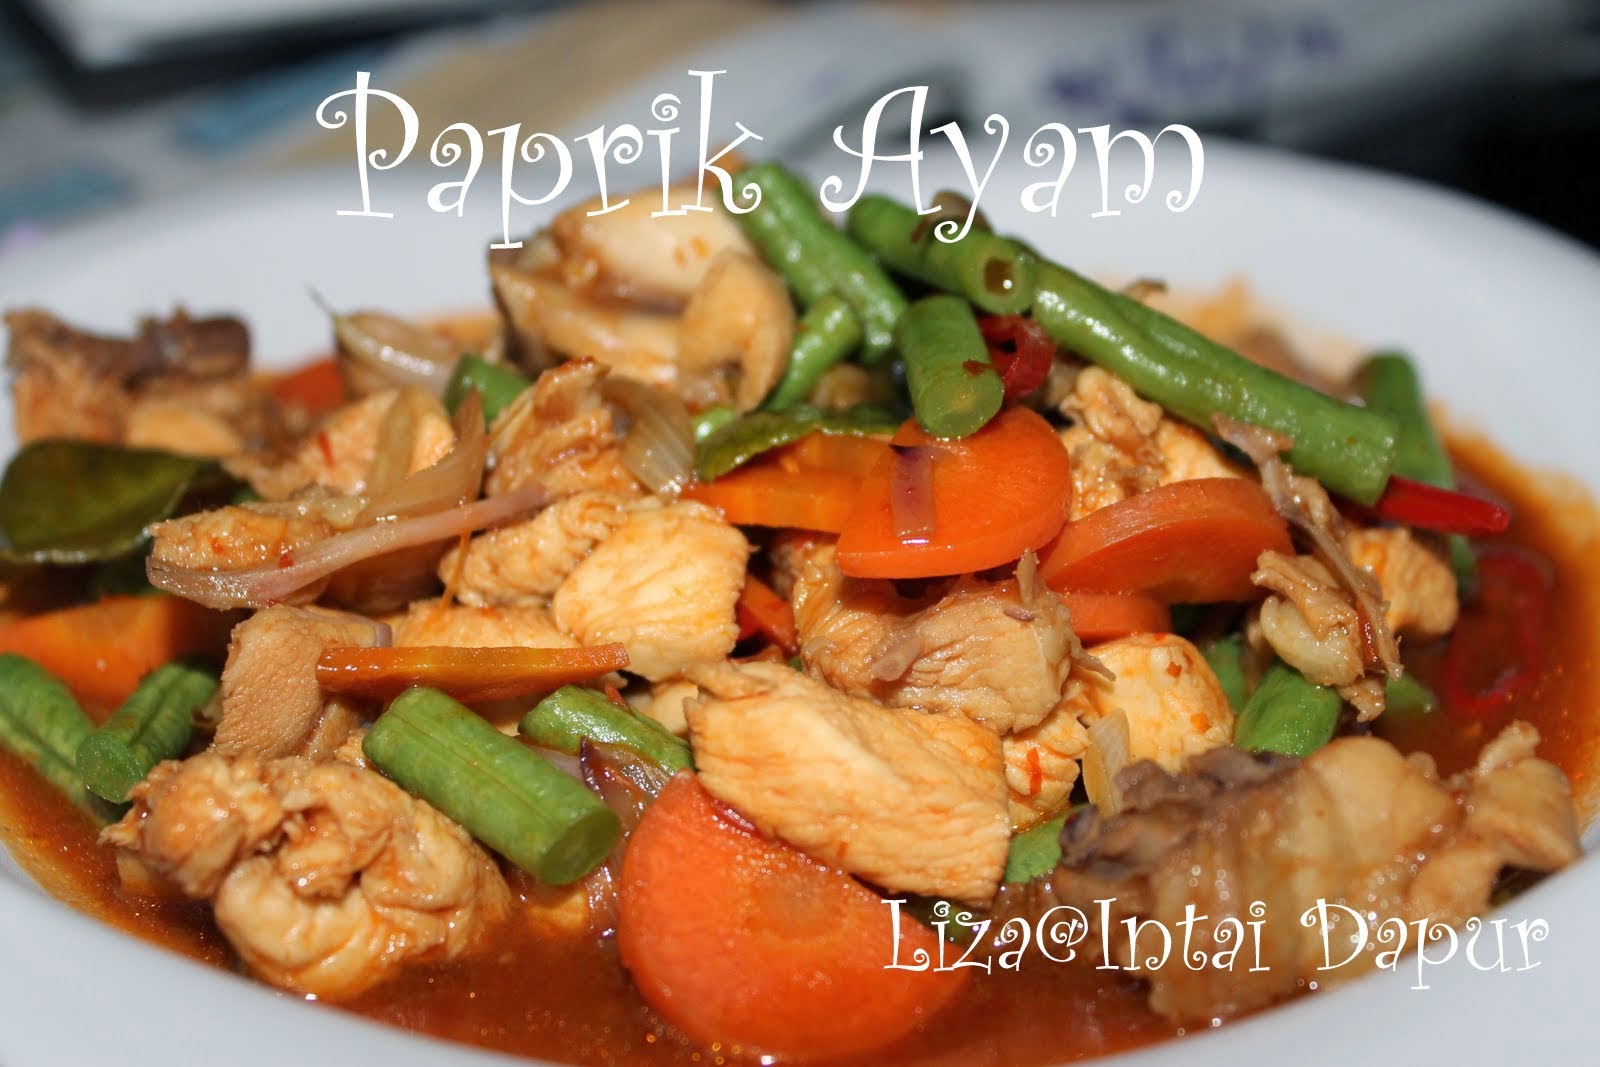 INTAI DAPUR: Paprik Ayam